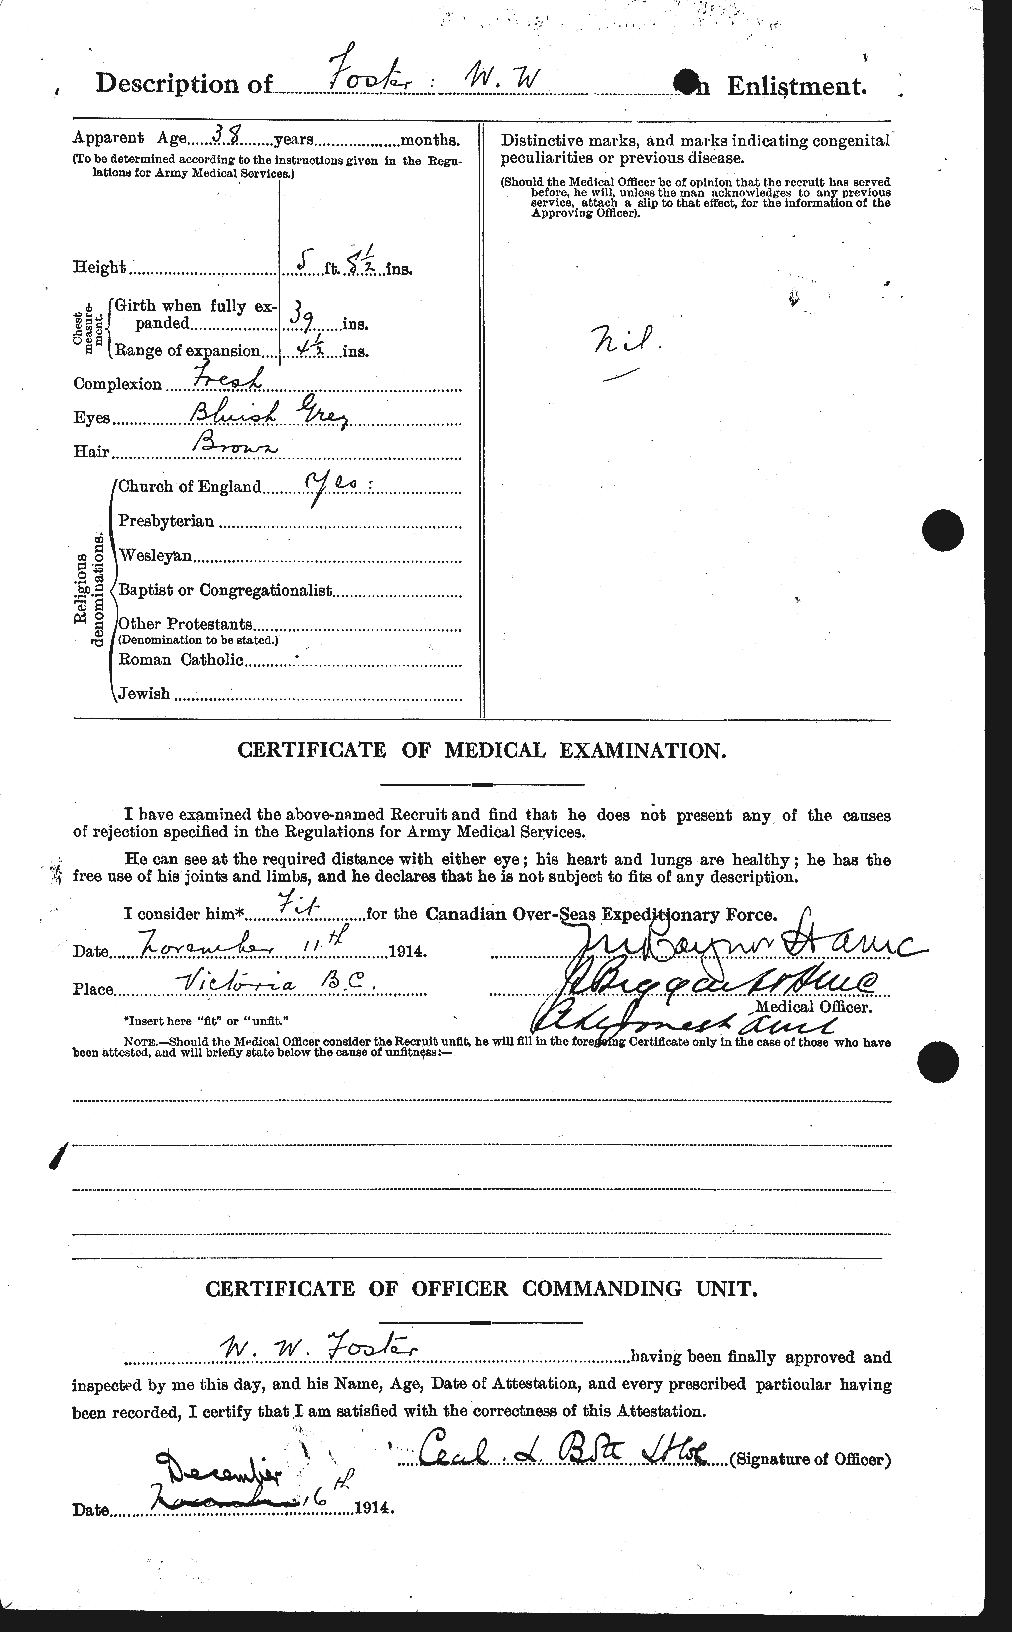 Dossiers du Personnel de la Première Guerre mondiale - CEC 328776b